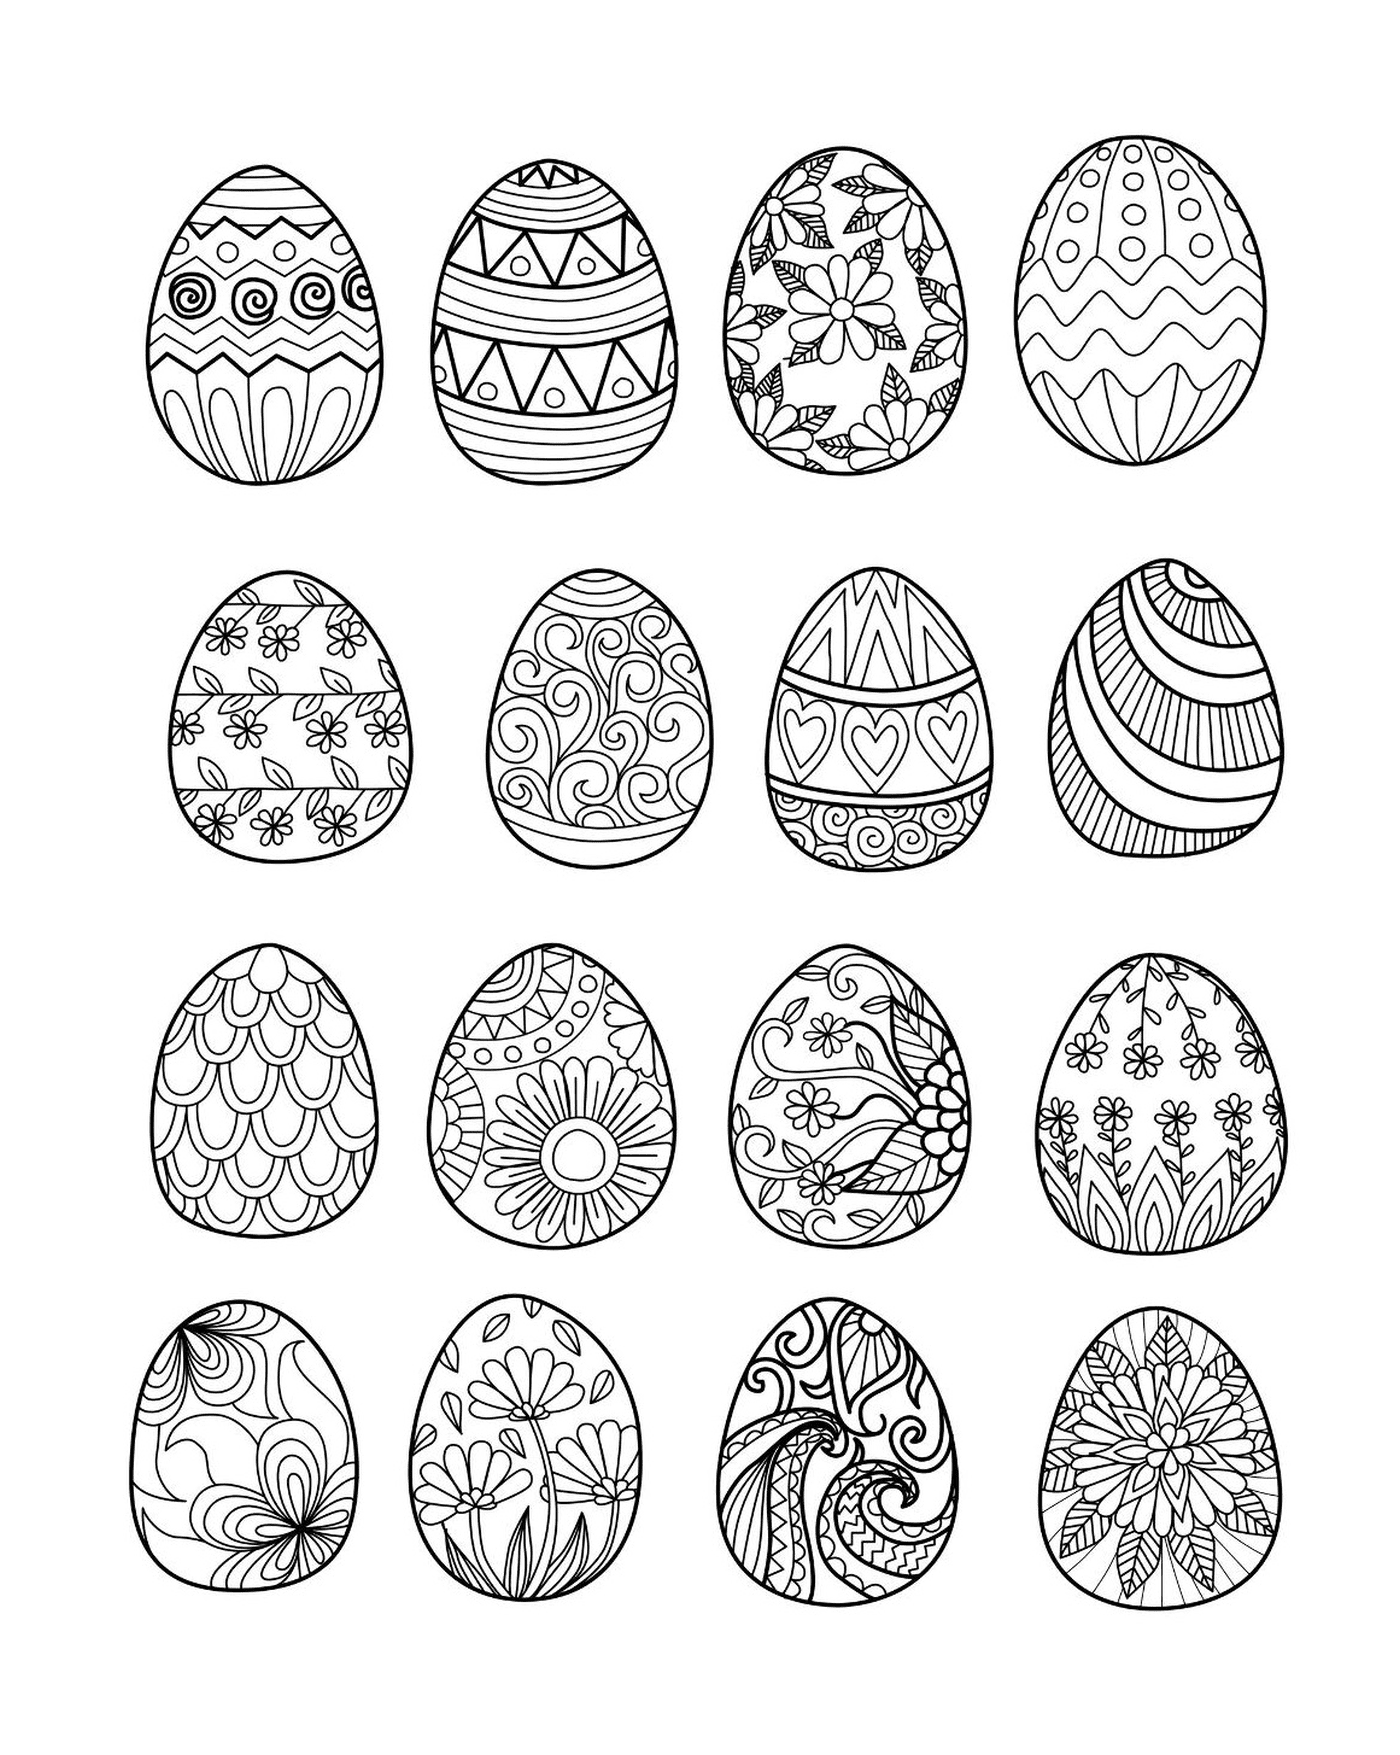  6 huevos juntos 